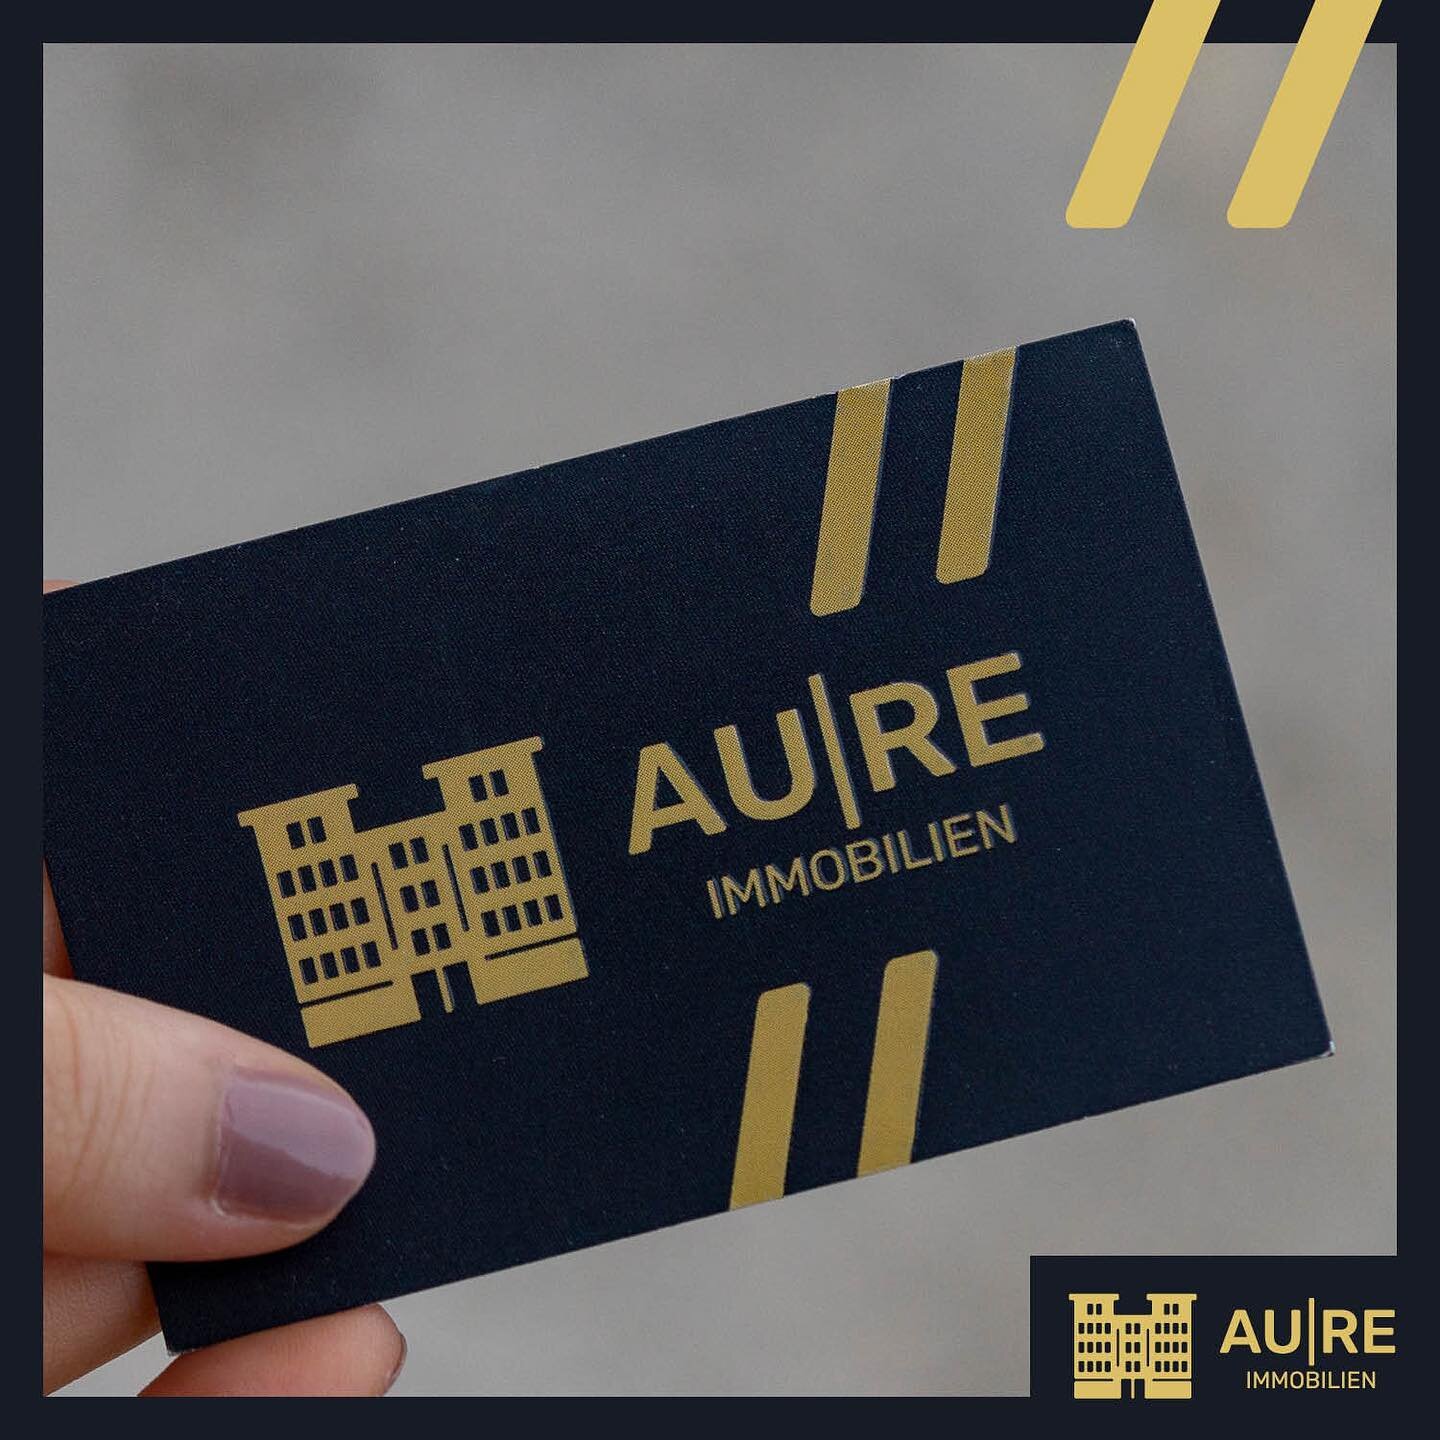 Wir machen mehr aus einem Grund. ✨ - @aure_immobilien 

#aureimmobilien #immobilien #realestate #vienna #austria